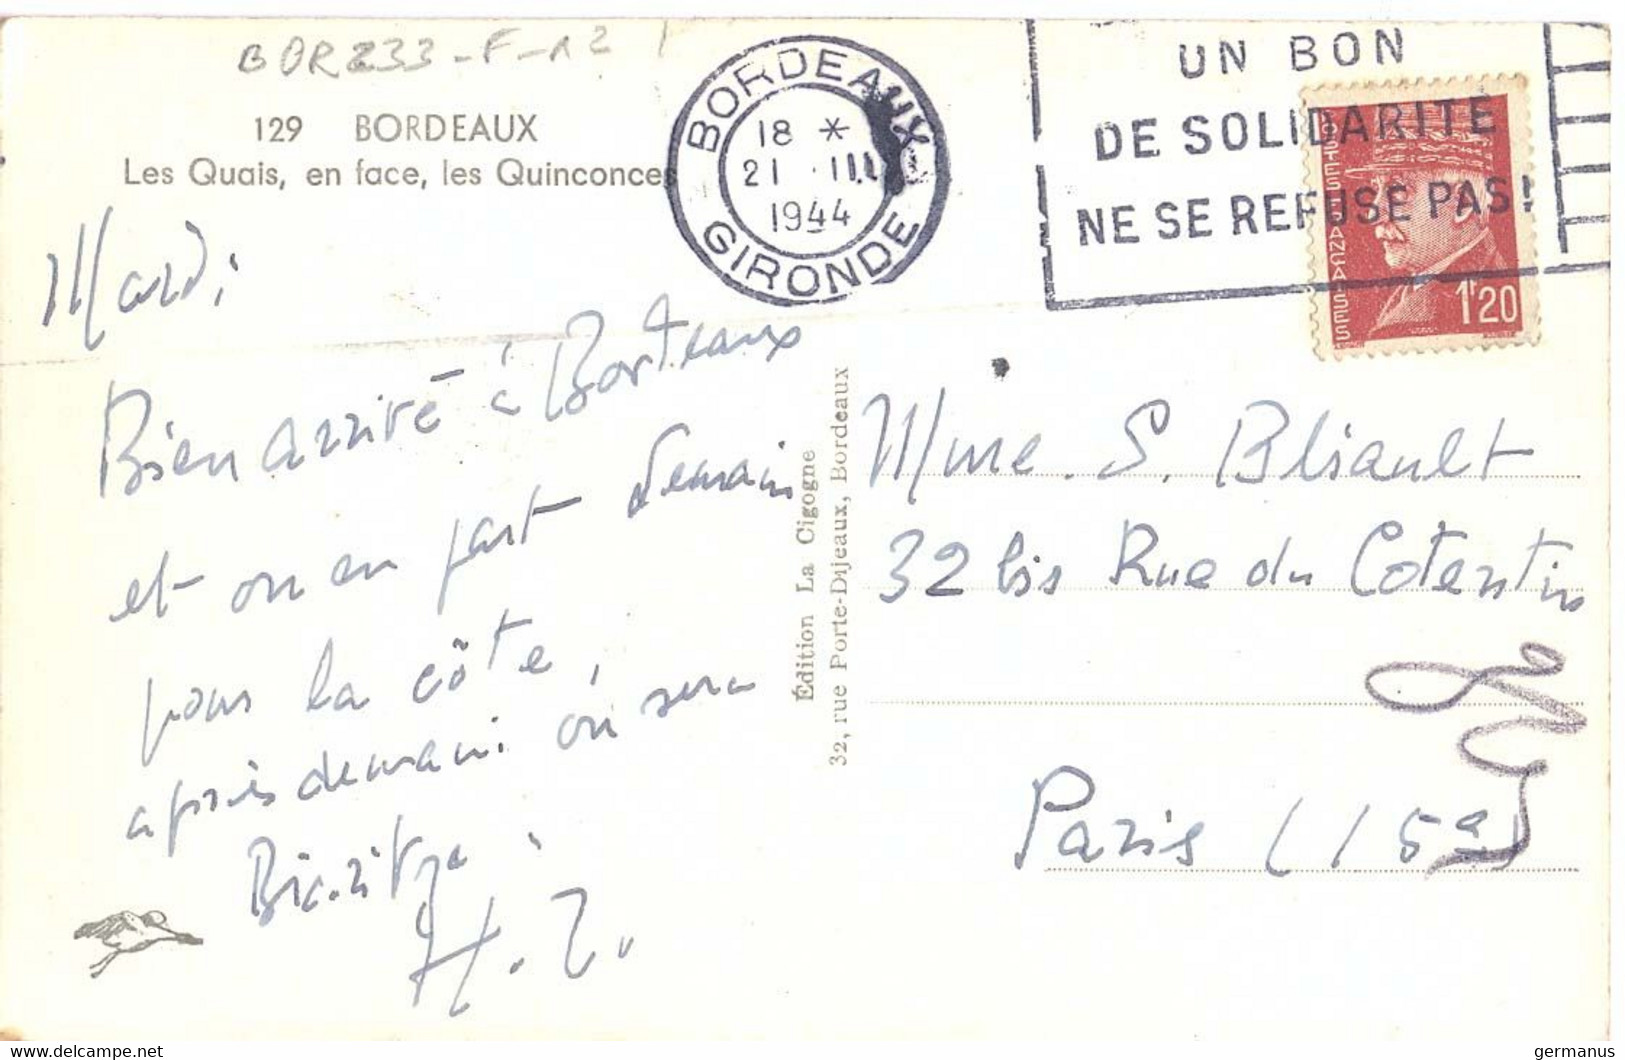 BORDEAUX GIRONDE OMec FLIER 21.III 1944 UN BON / DE SOLIDARITÉ / NE SE REFUSE PAS ! - Mechanical Postmarks (Advertisement)